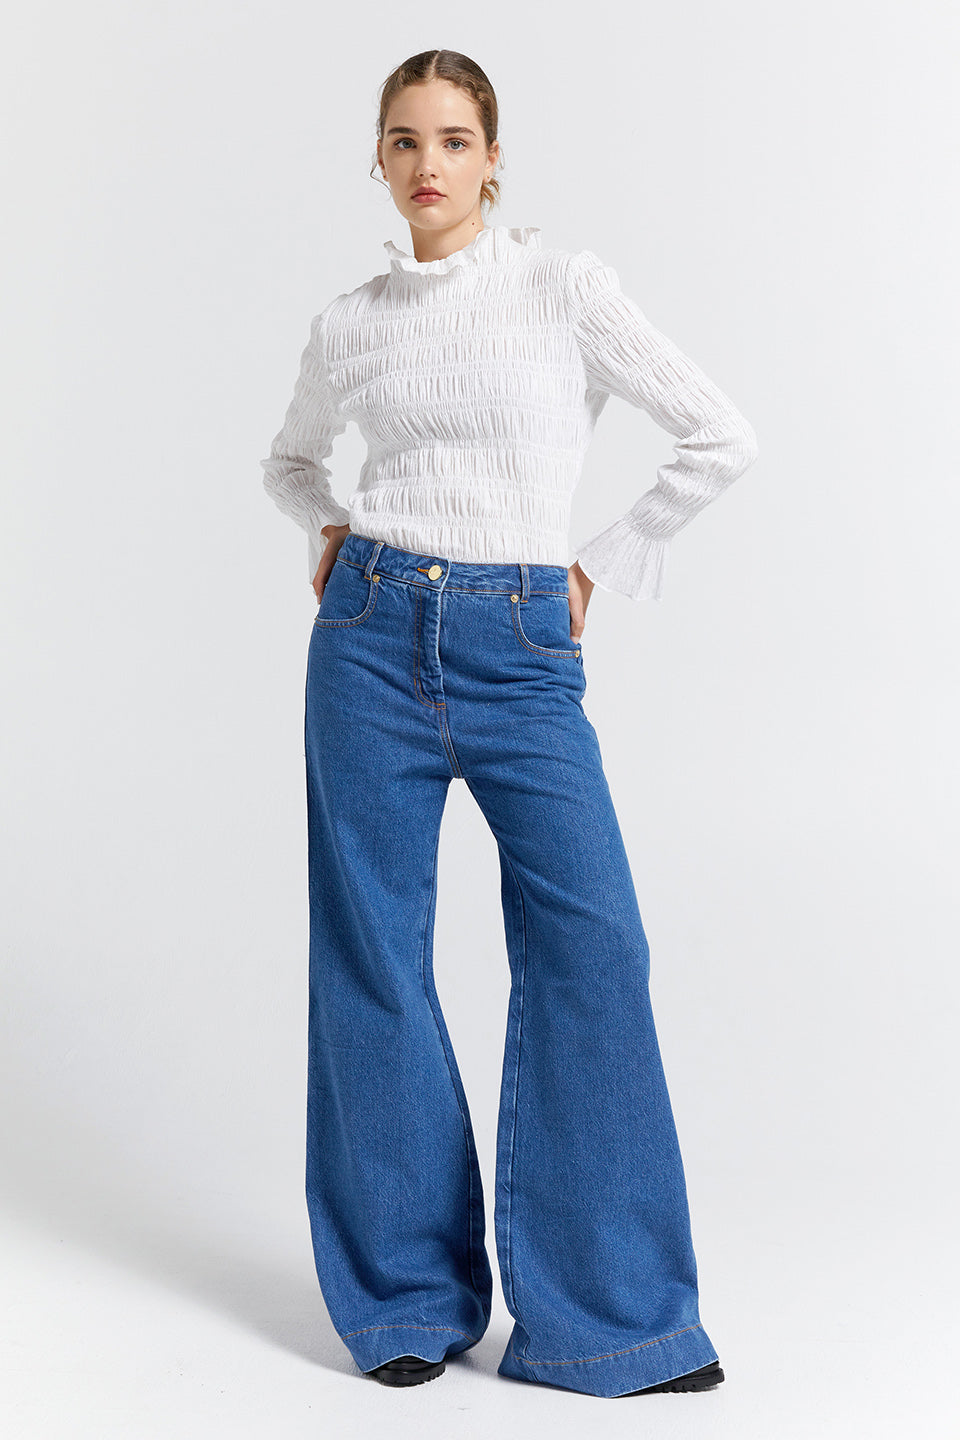 Mod Flared Jeans - Washed Denim